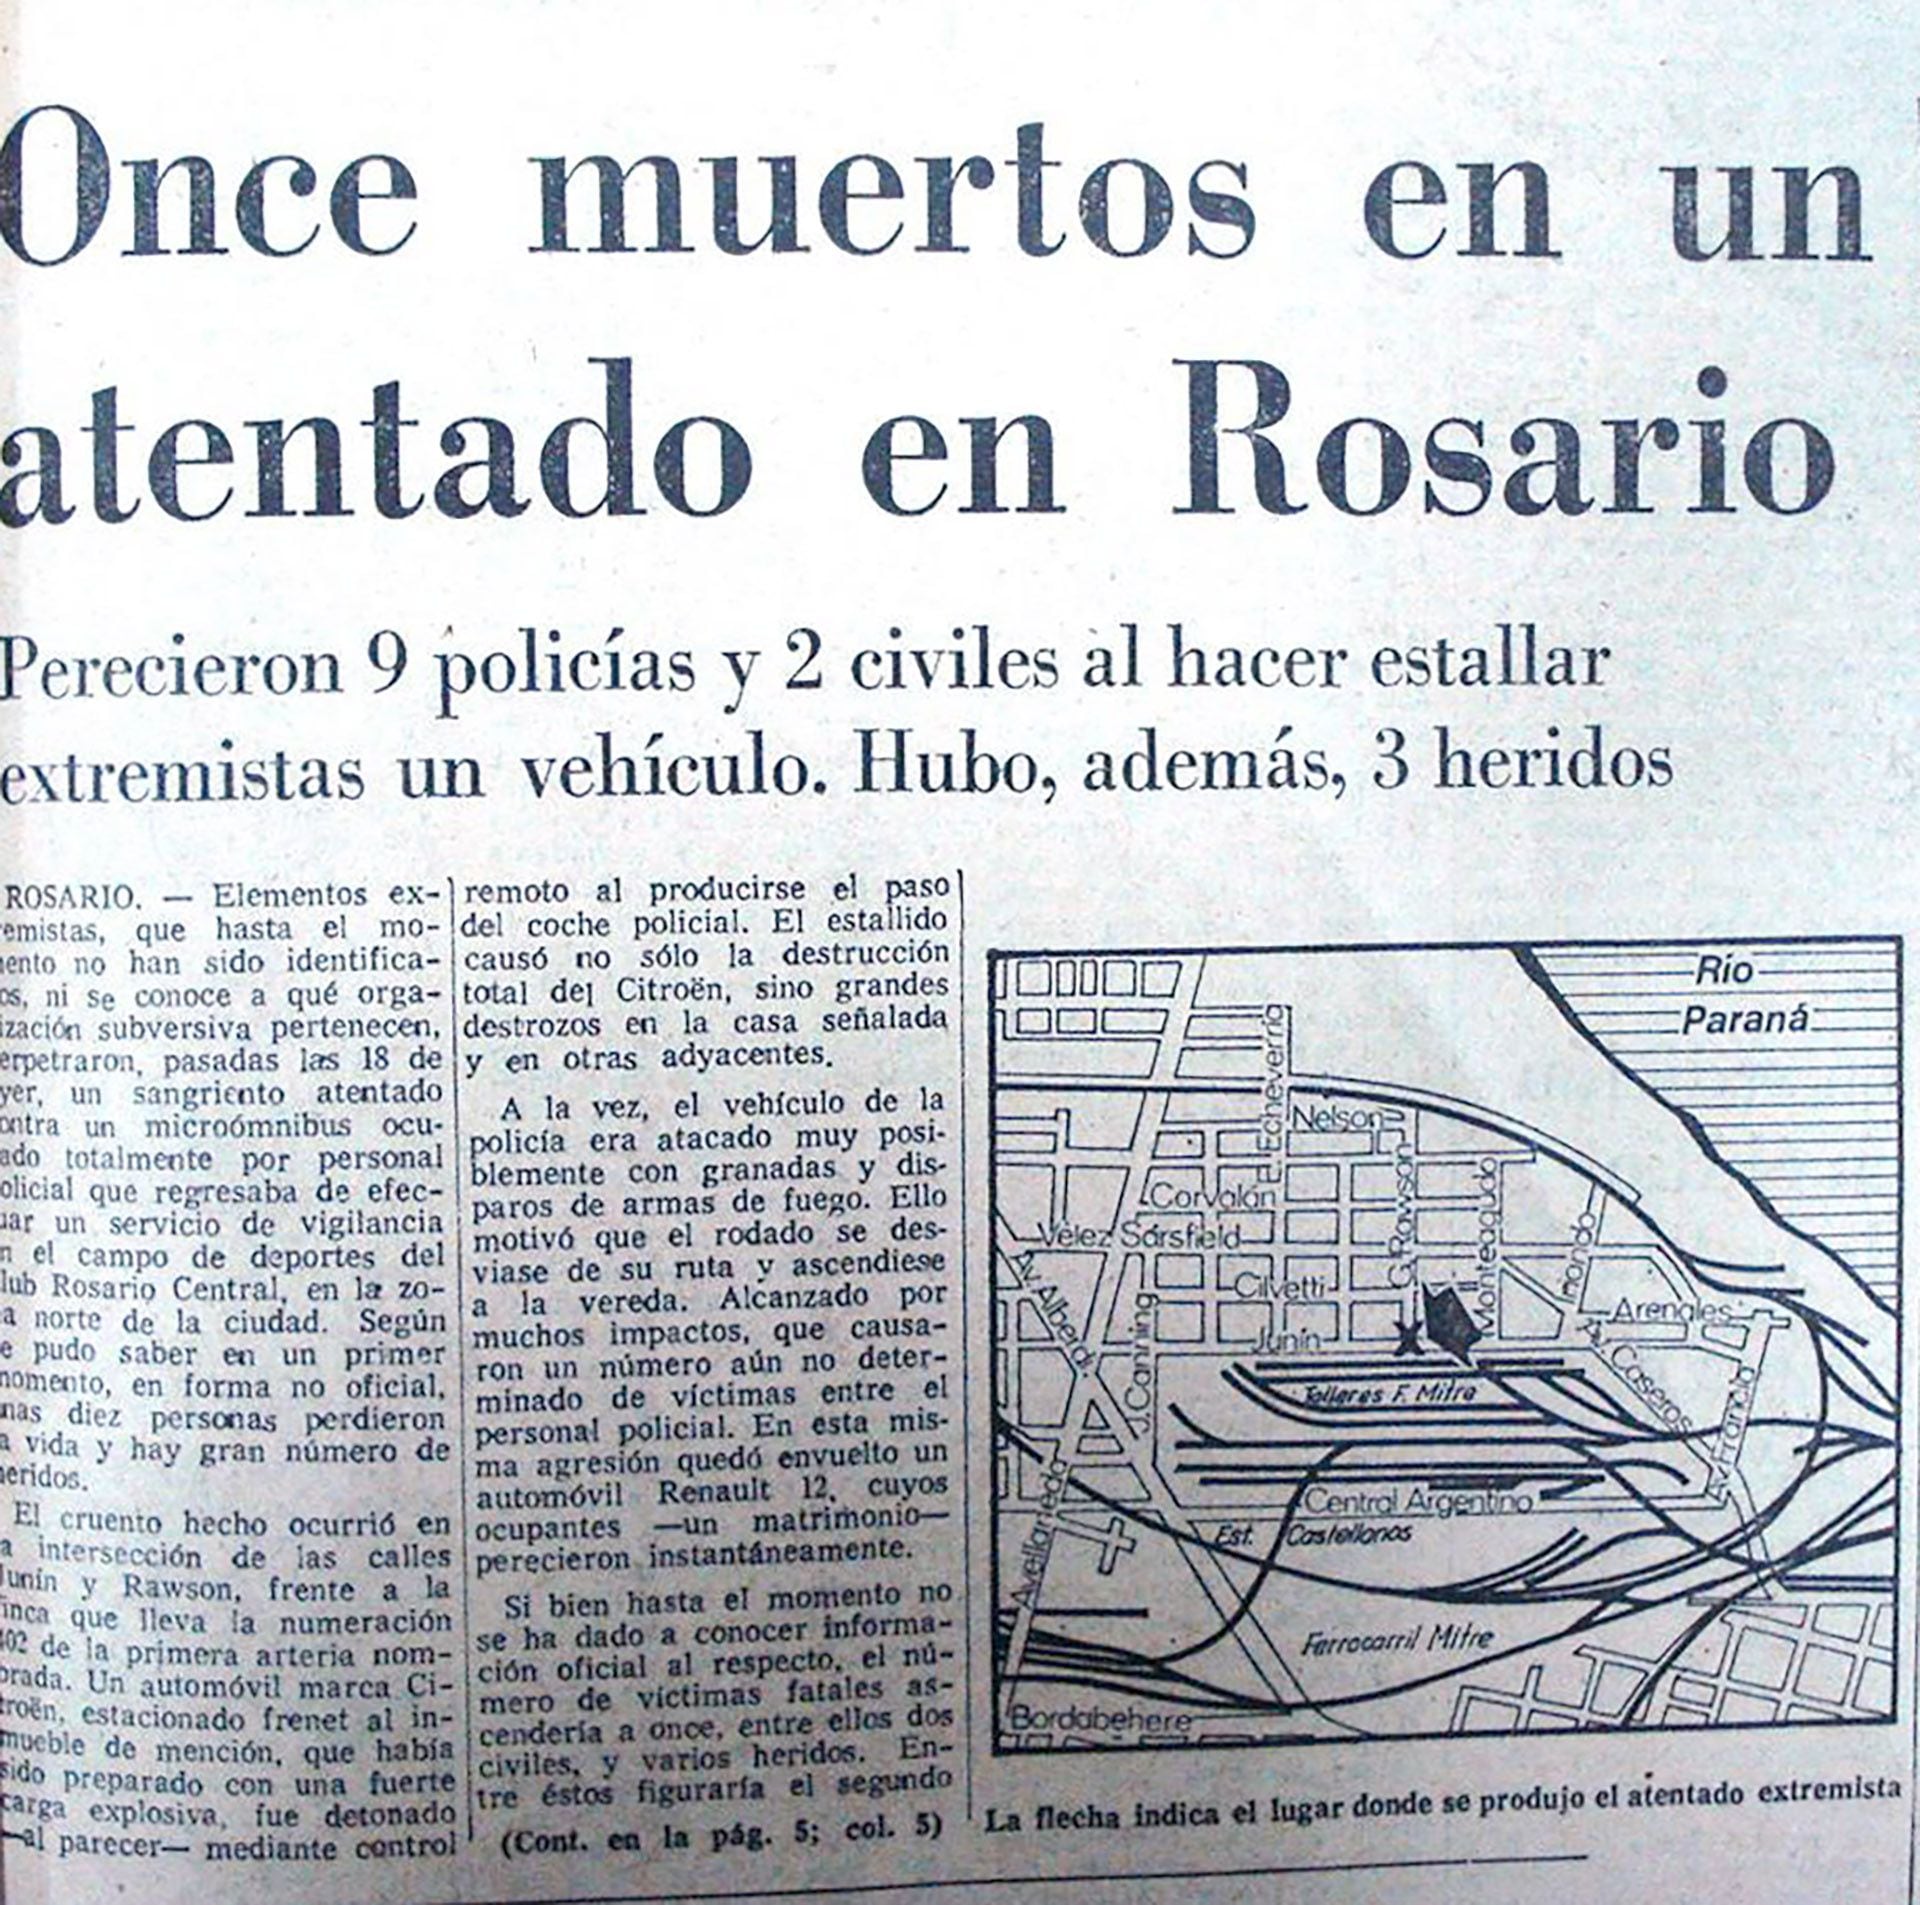 Rosario - Figure 4